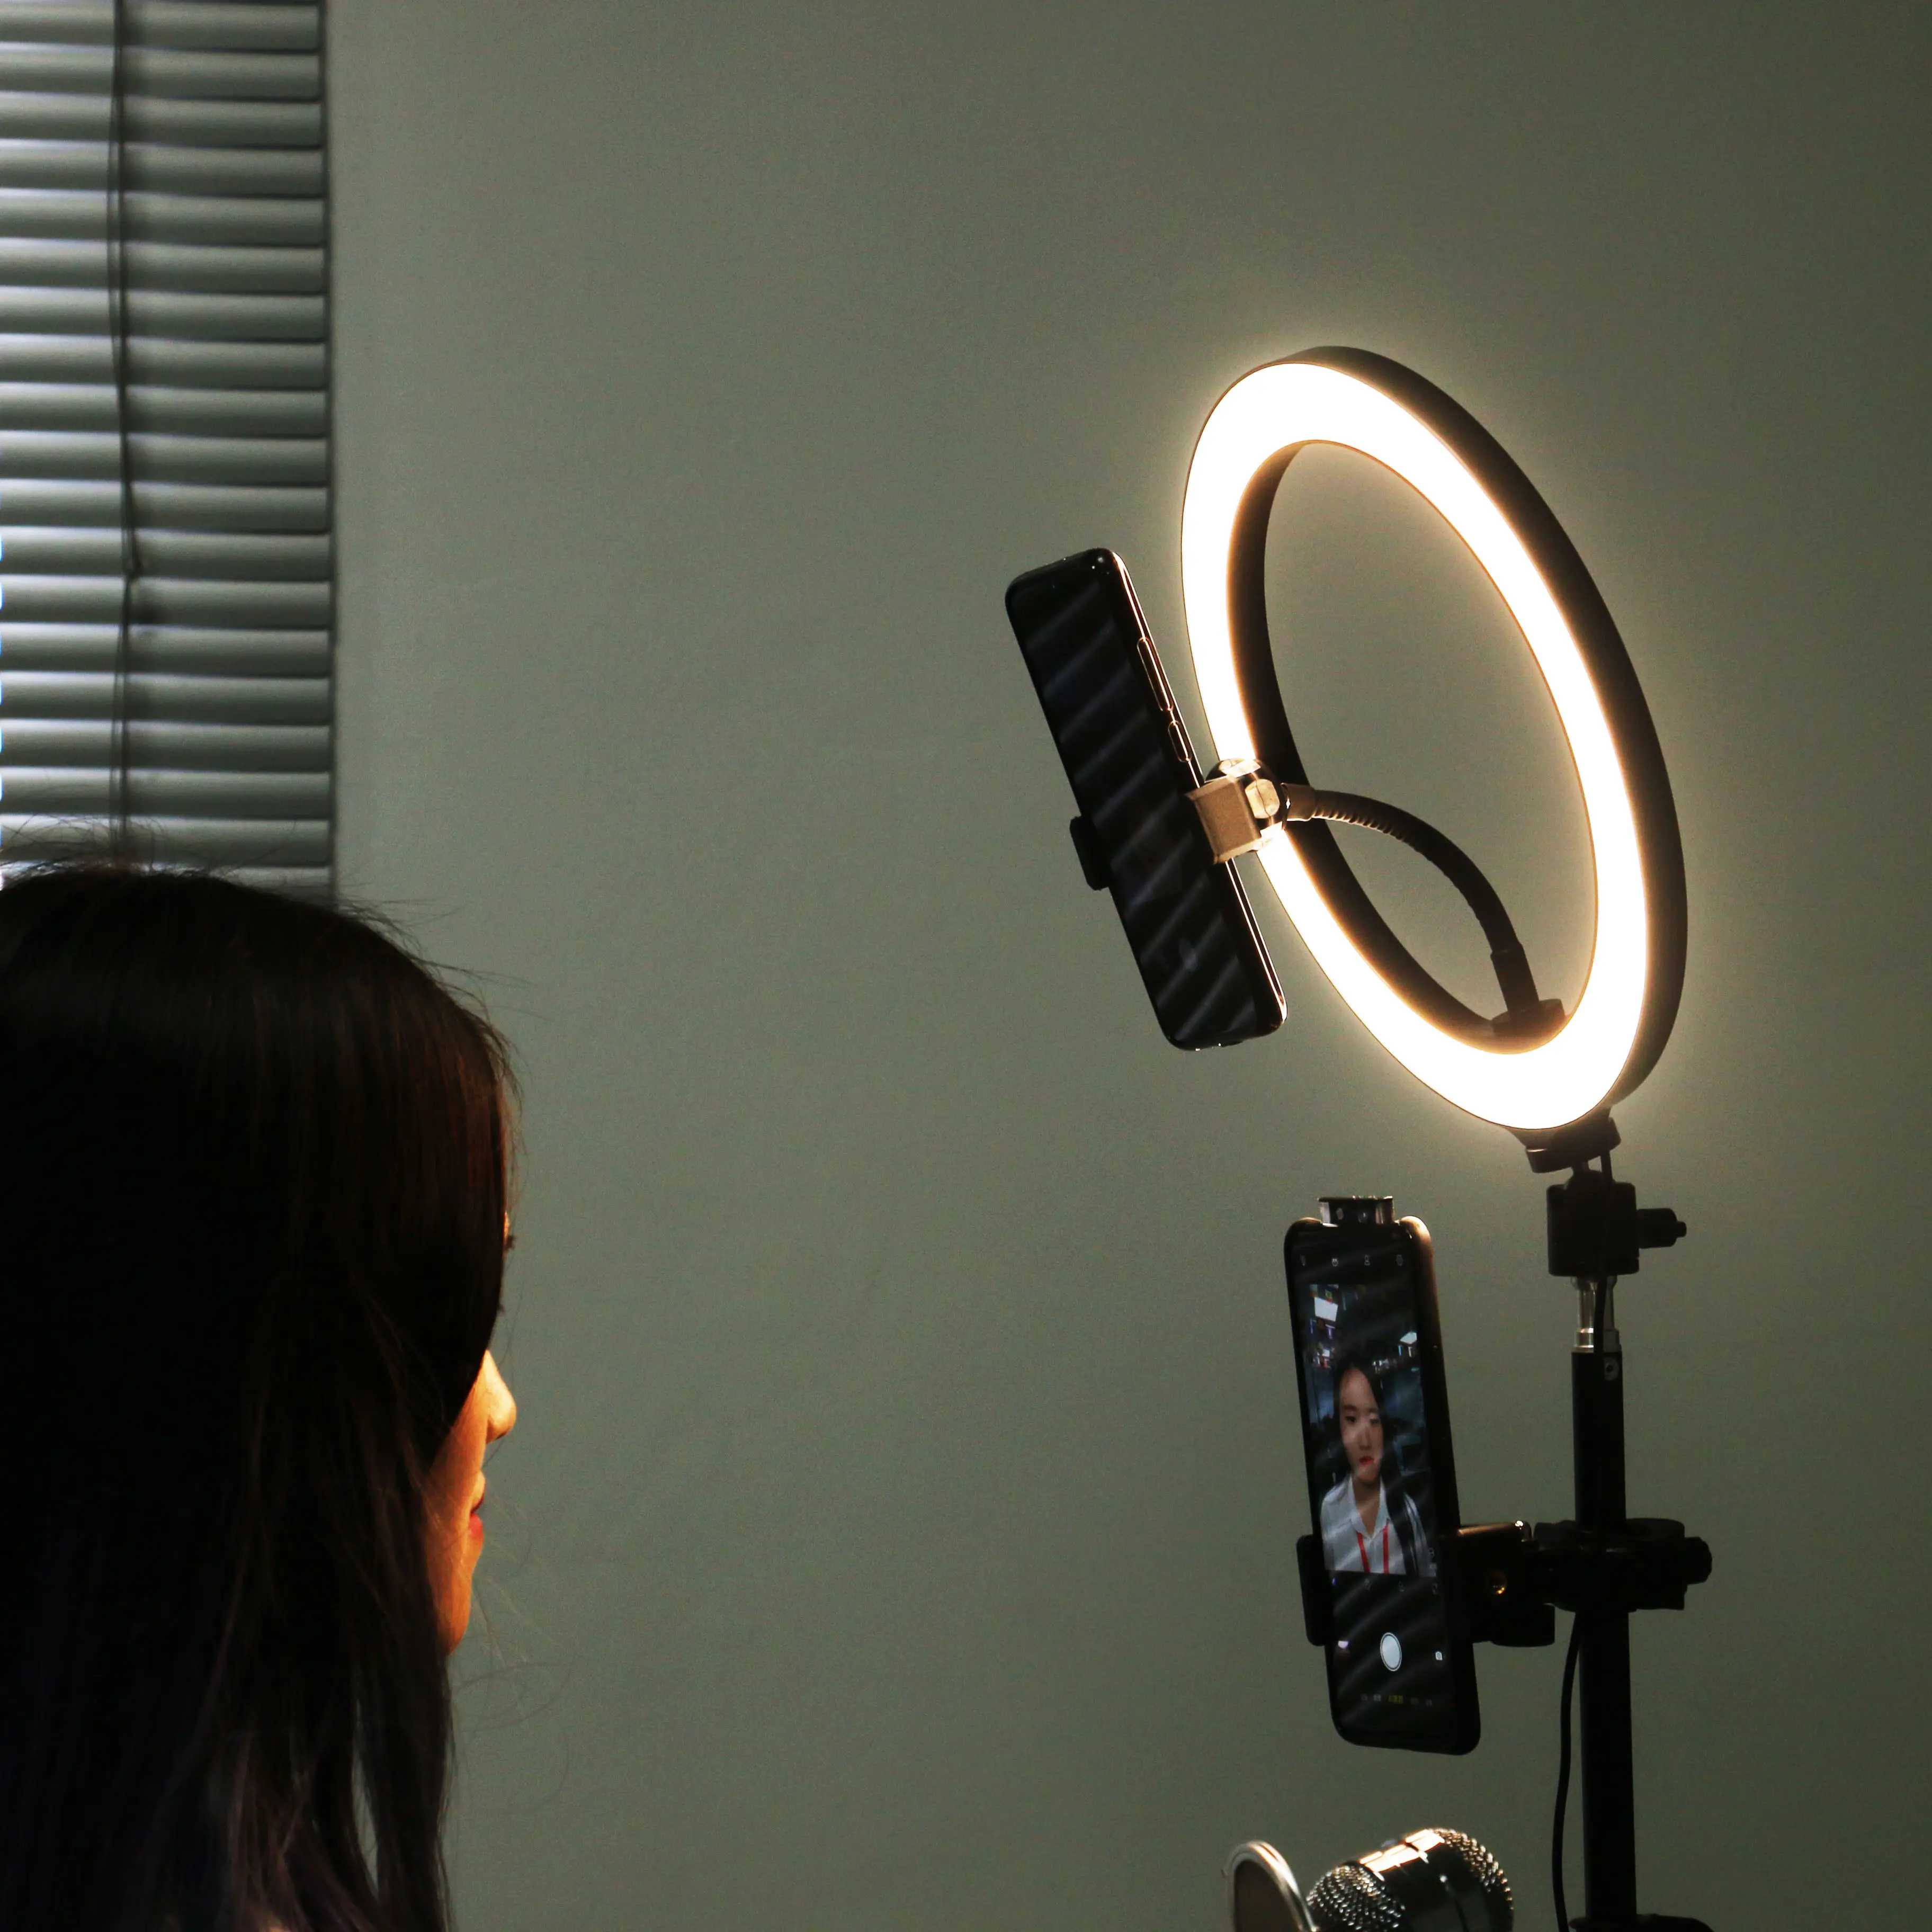 Đèn LED Nhiếp Ảnh Đèn Vòng Có Thể Thay Đổi Độ Sáng Đèn Trung Quốc Bán Chạy 10 "120 Cái Đèn LED Selfie Video Tripod Đèn LED Camera Studio